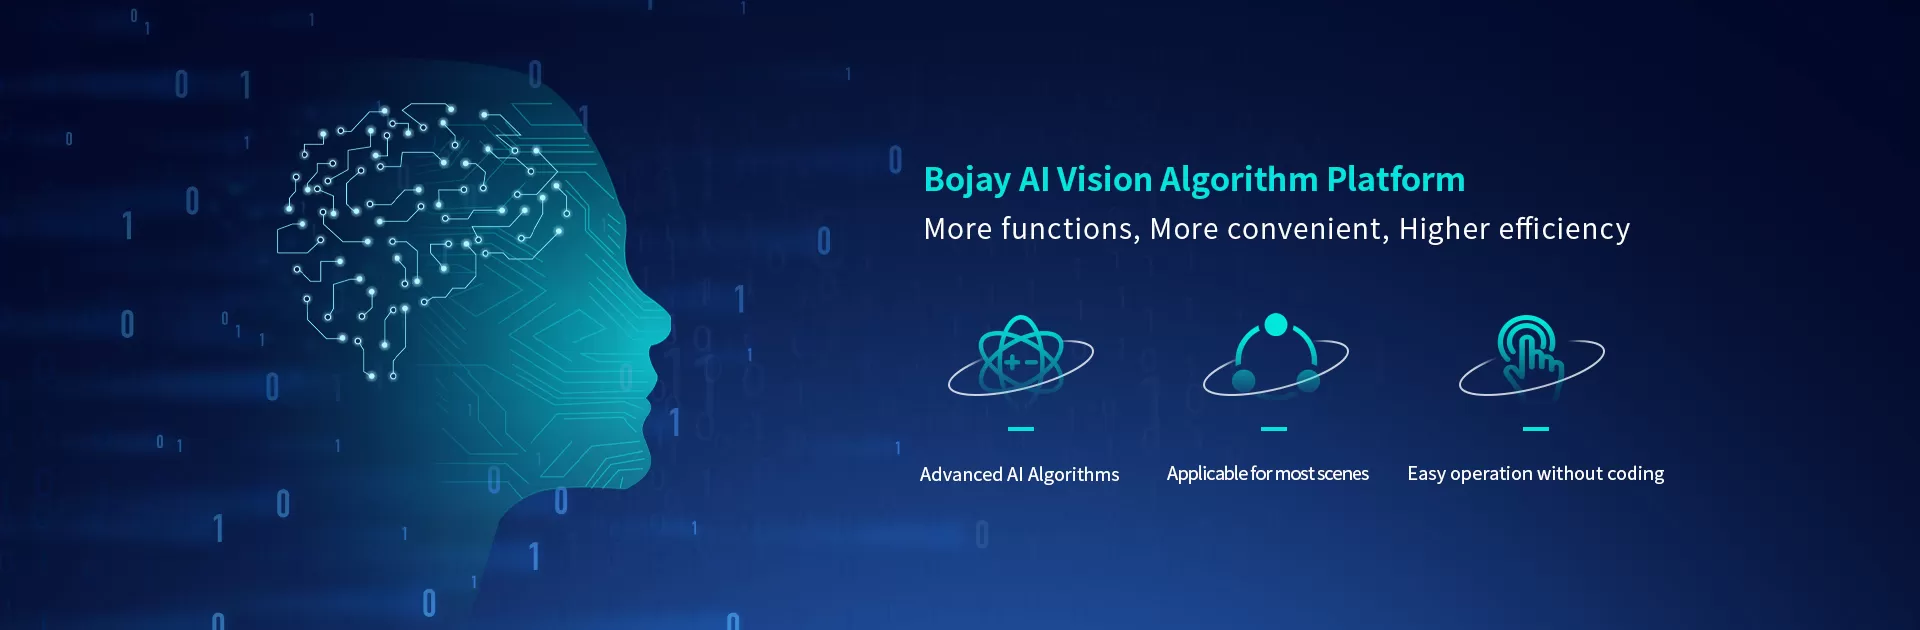 Bojay AI Vision Algorithm Platform